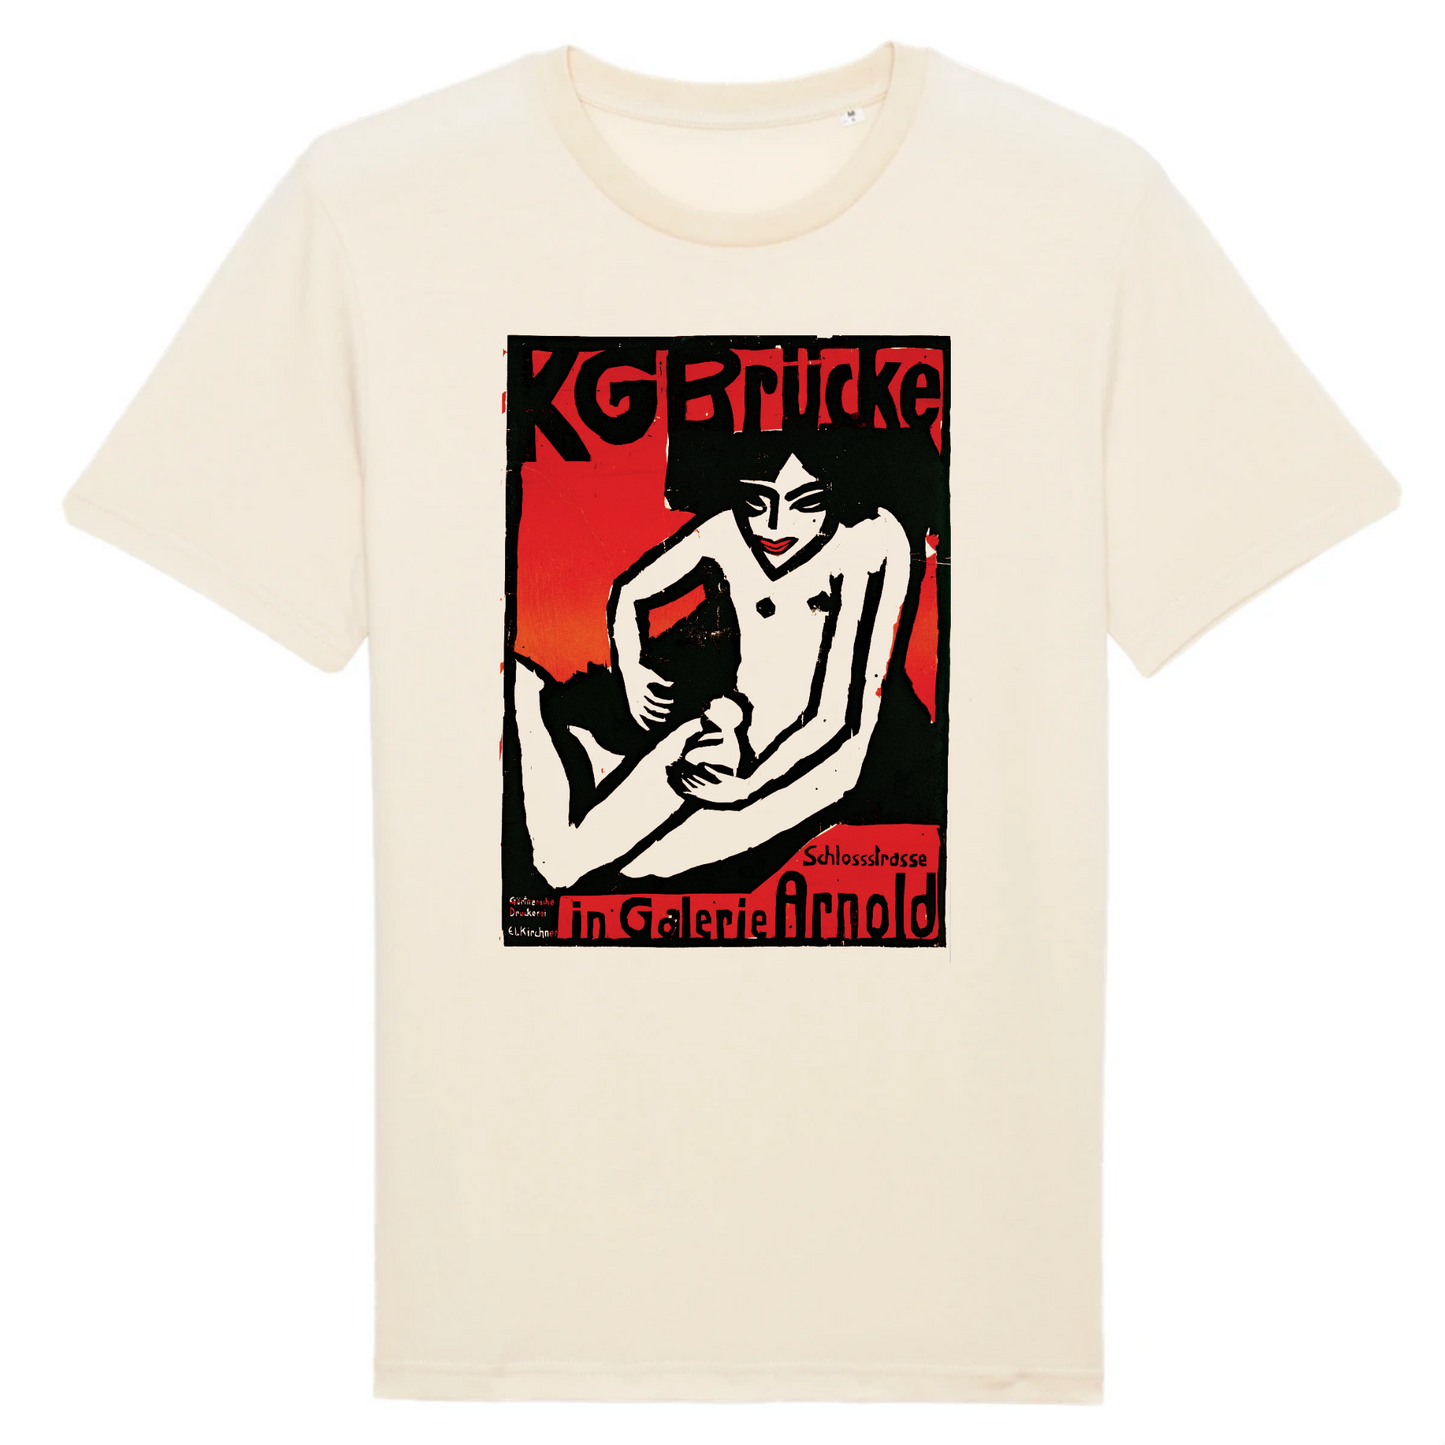 Die Brucke par Ernst Ludwig Kirchner - T-shirt en coton biologique